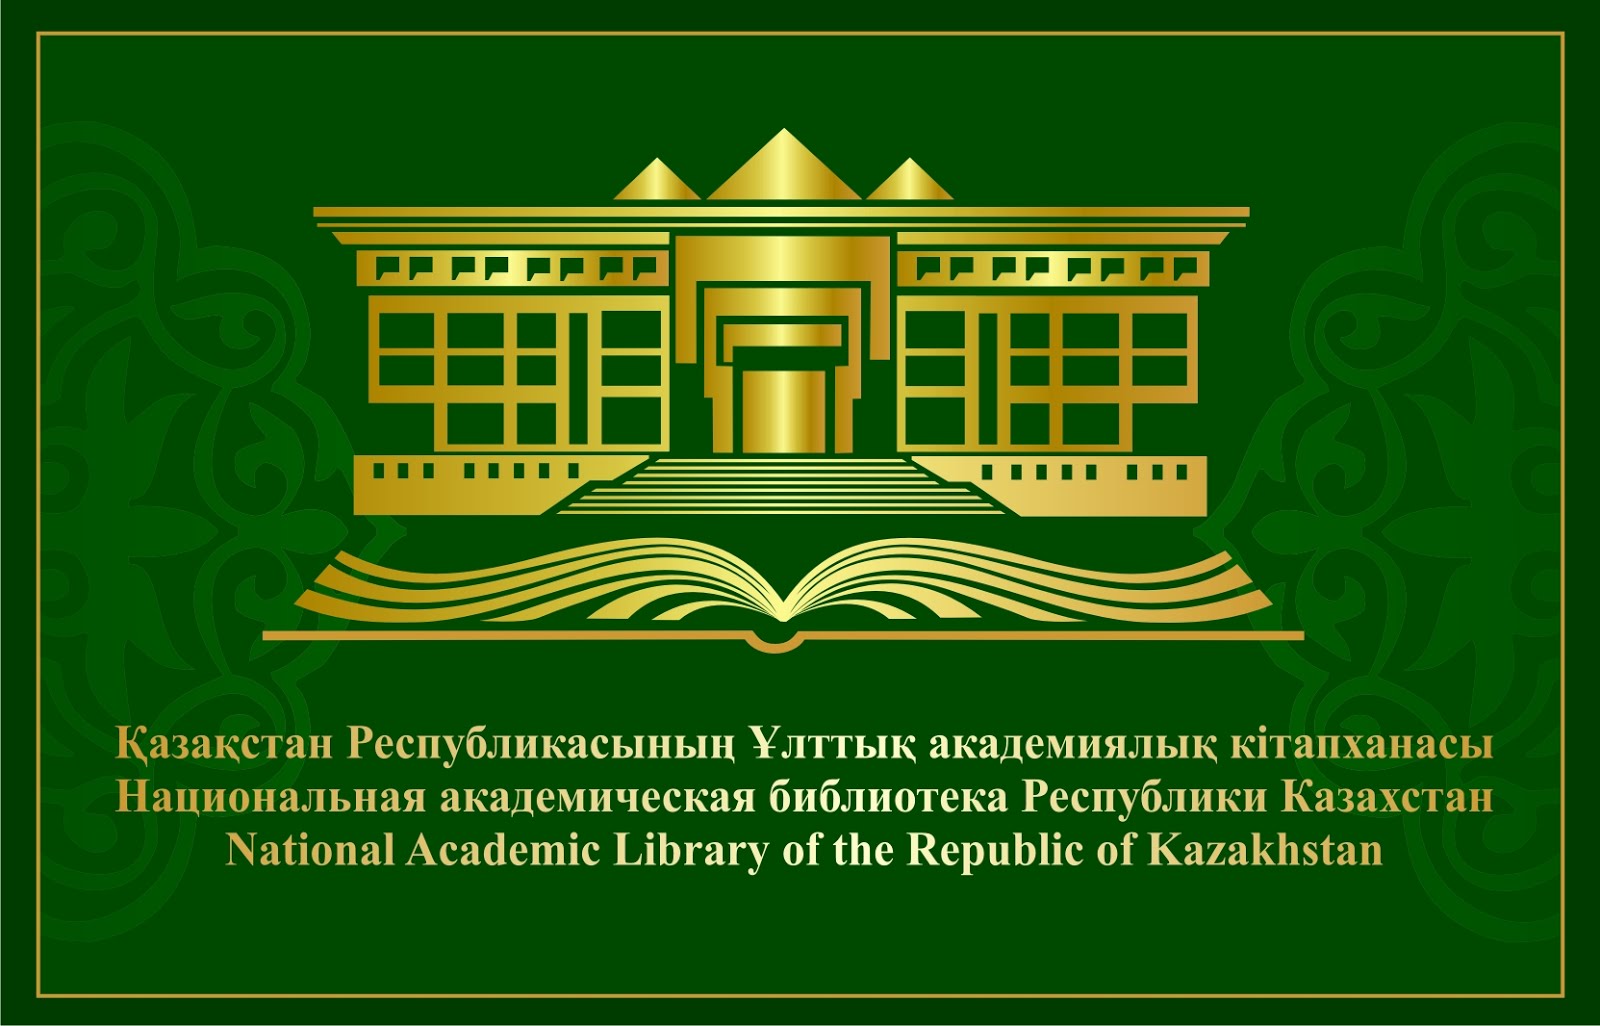 Сайт национальной академической библиотеки РК